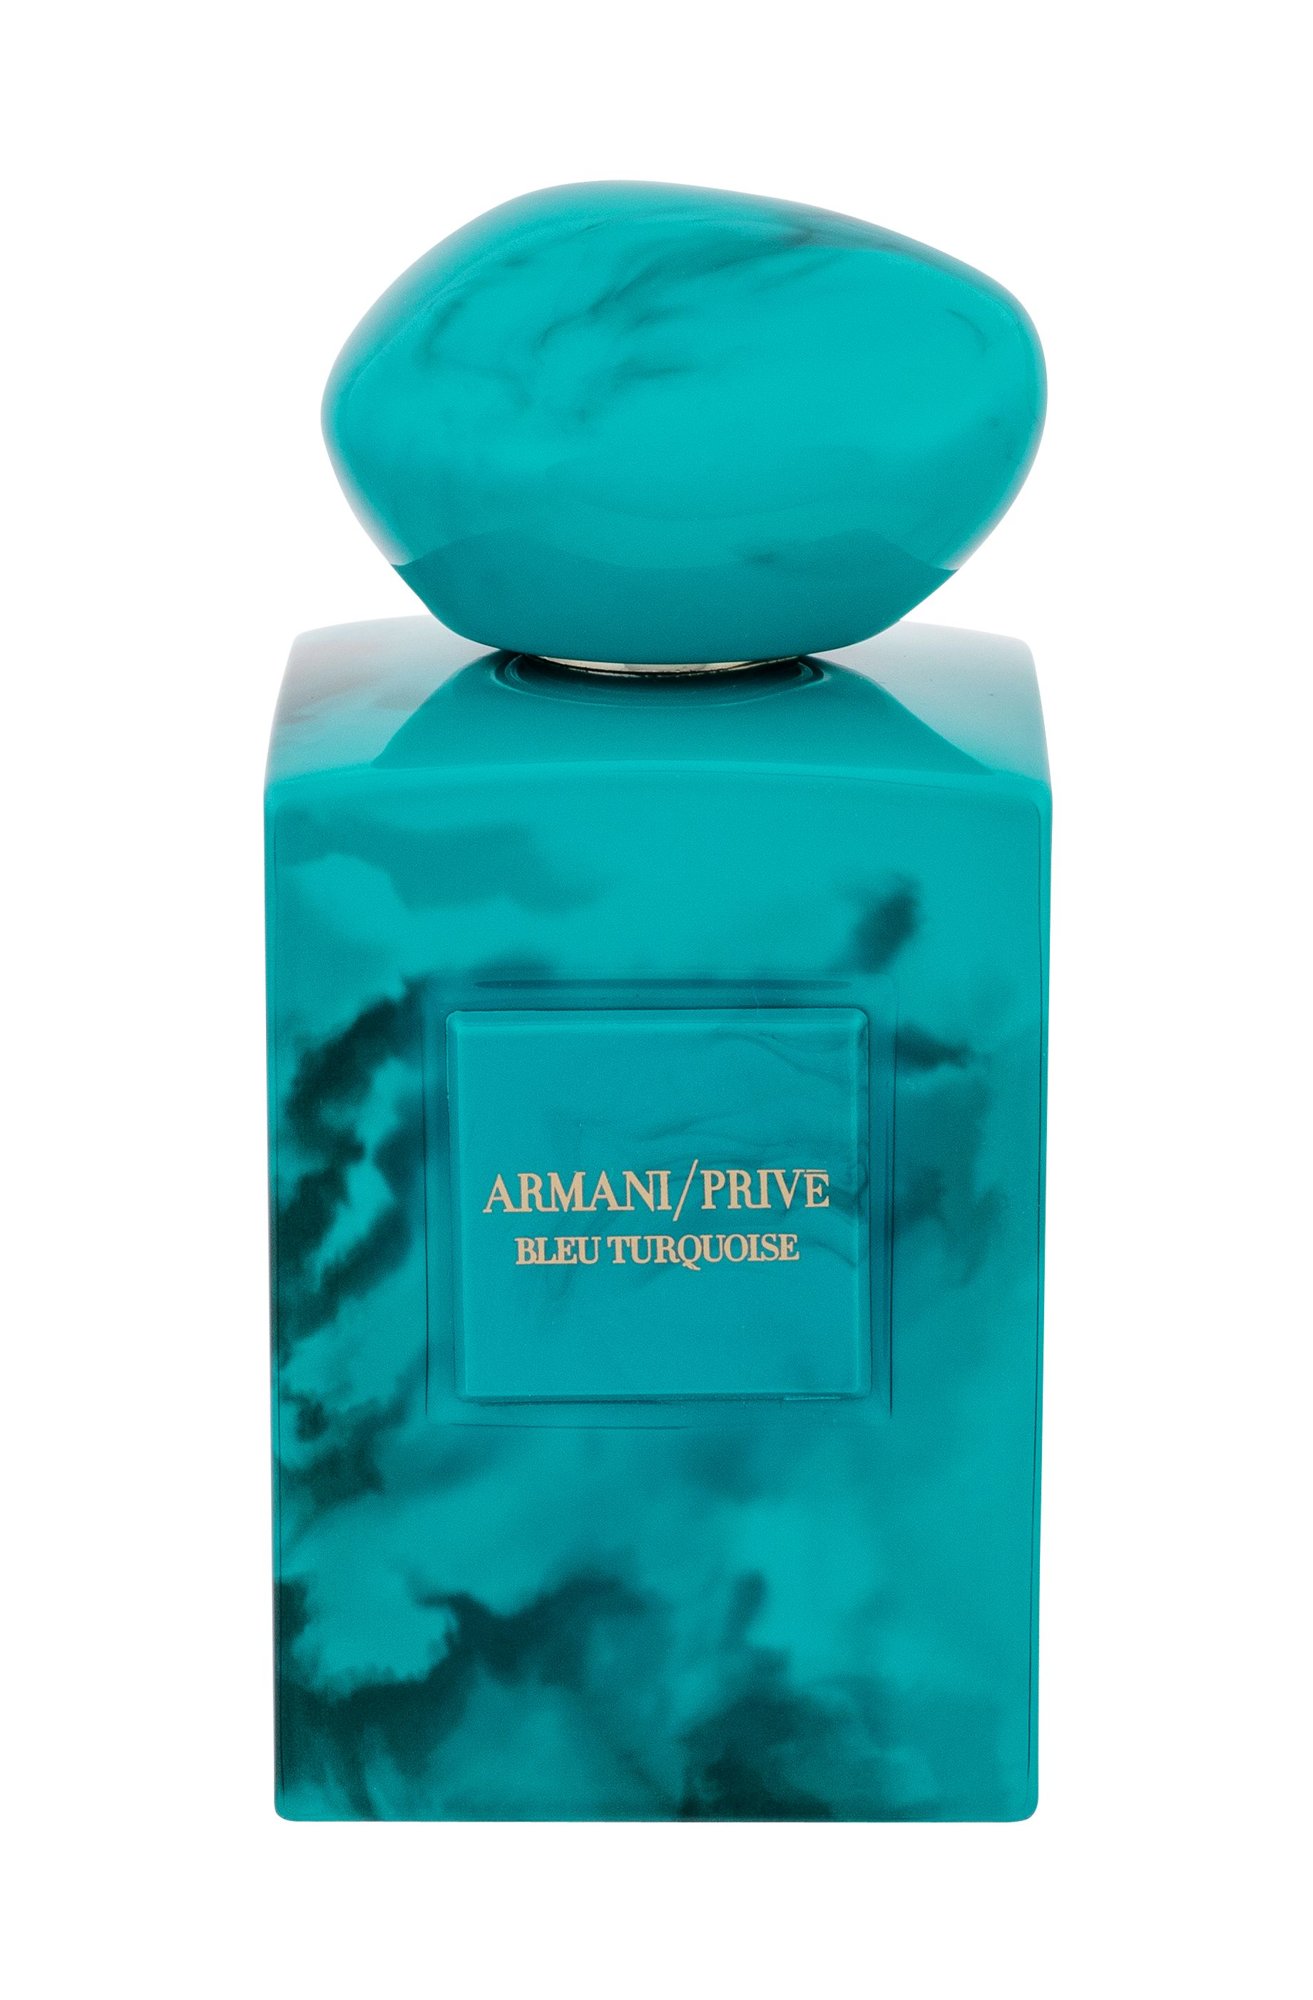 Armani Prive Bleu Turquoise 100ml NIŠINIAI Kvepalai Unisex EDP (Pažeista pakuotė)